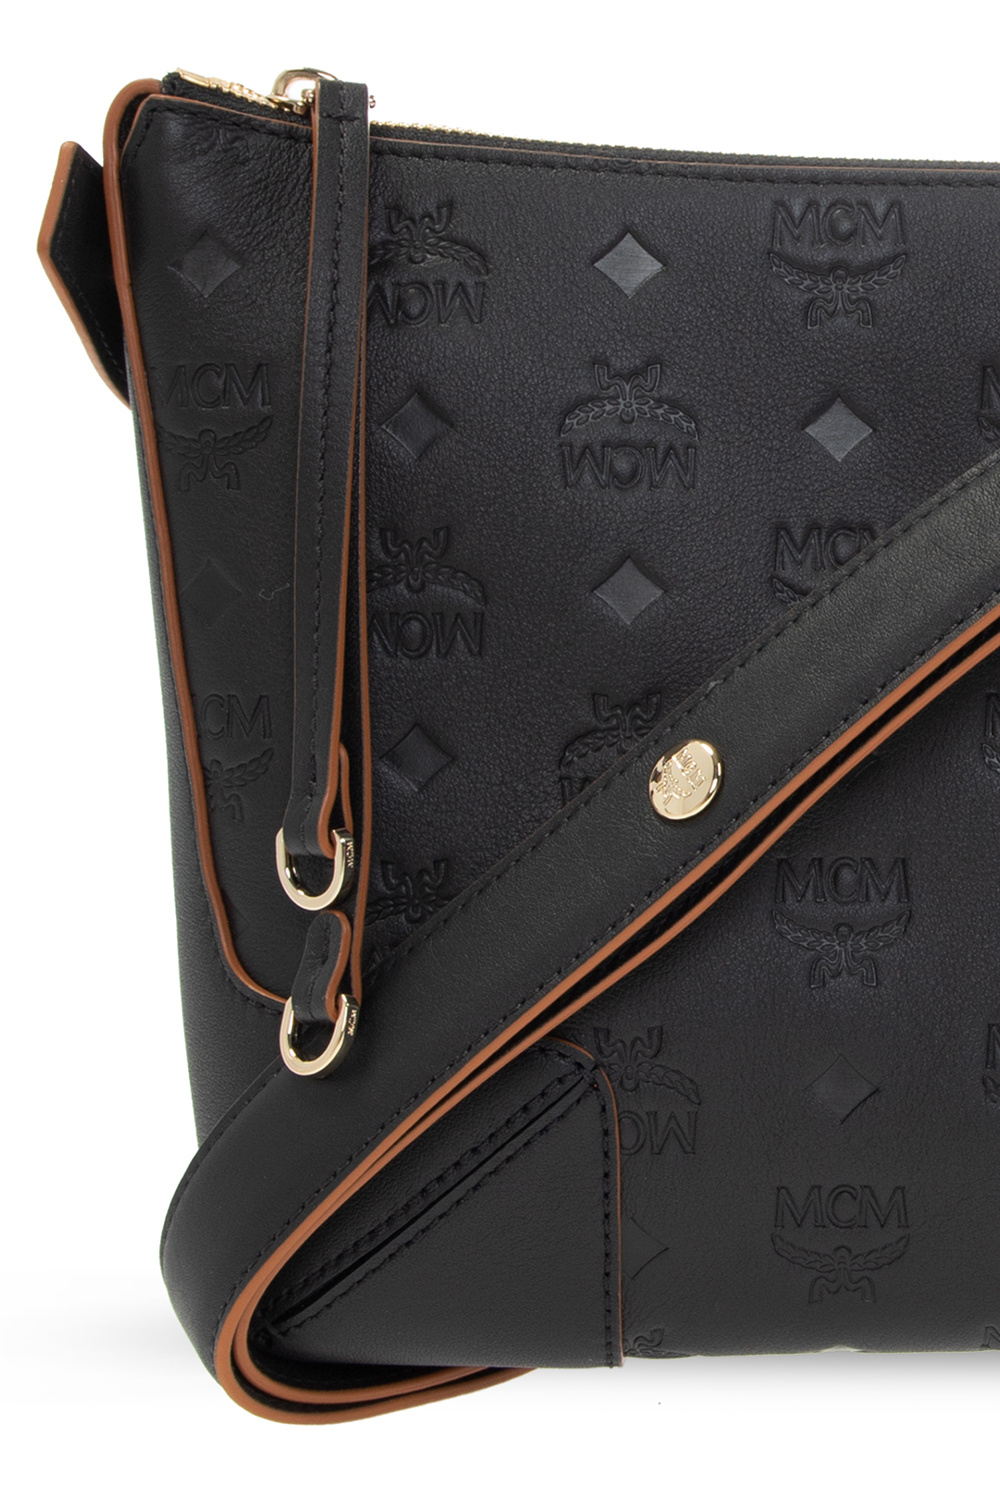 MCM shoulder bag black gold metal fittings leather used clutch bag